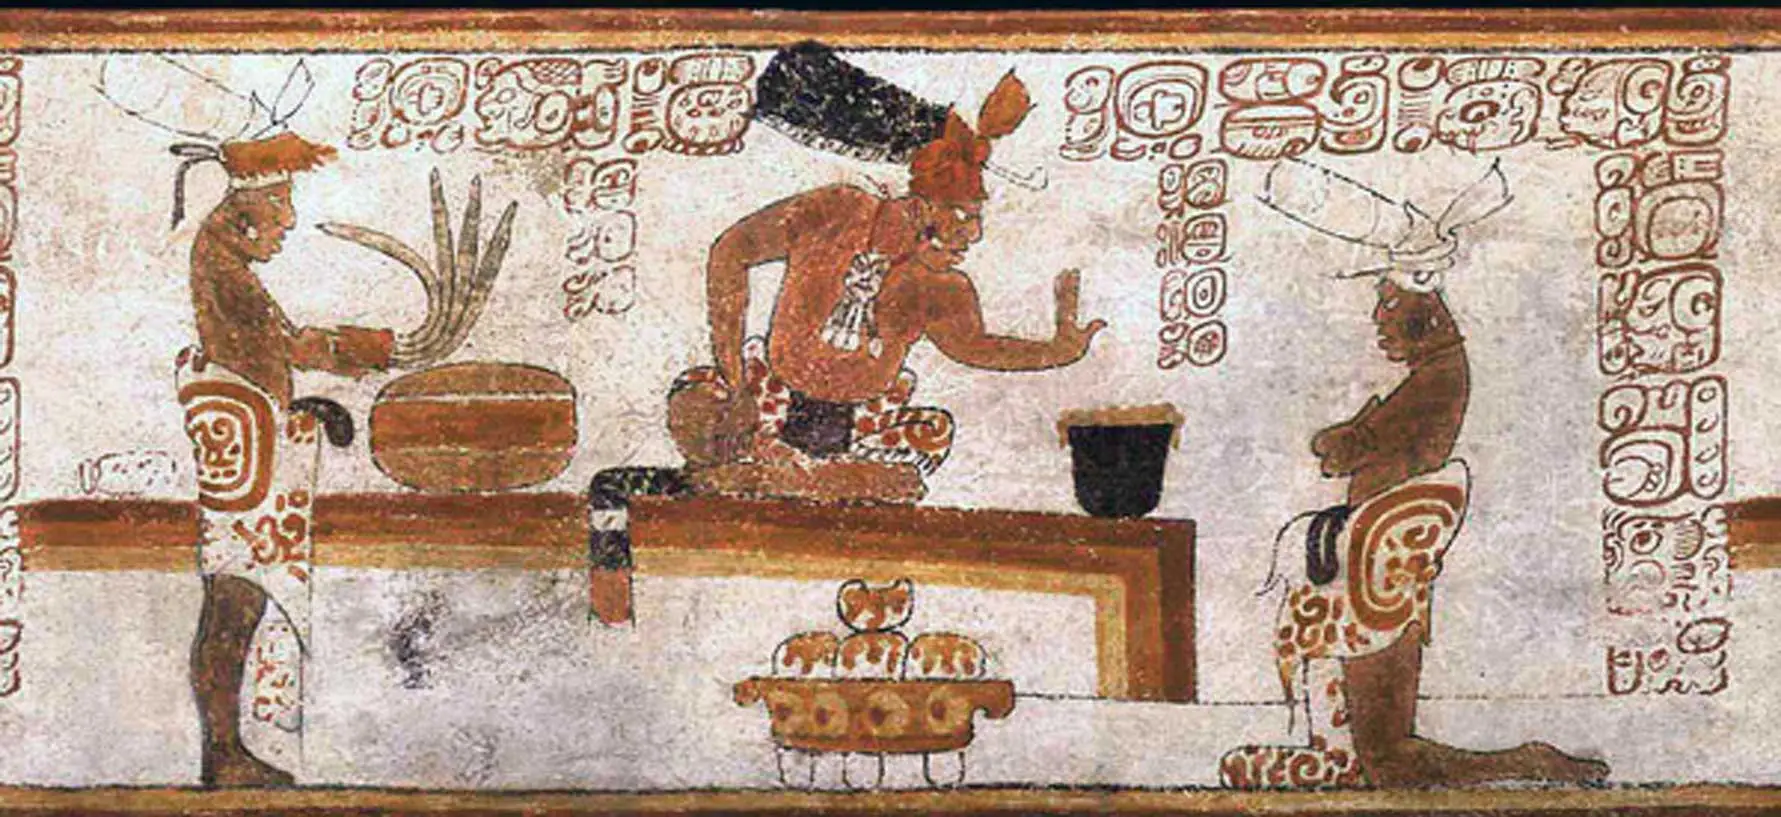 Παράσταση σε αγγείο των Μάγια που απεικονίζει έναν αξιωματούχο να μιλά έντονα σε κάποιον γονατιστό υπηρέτη